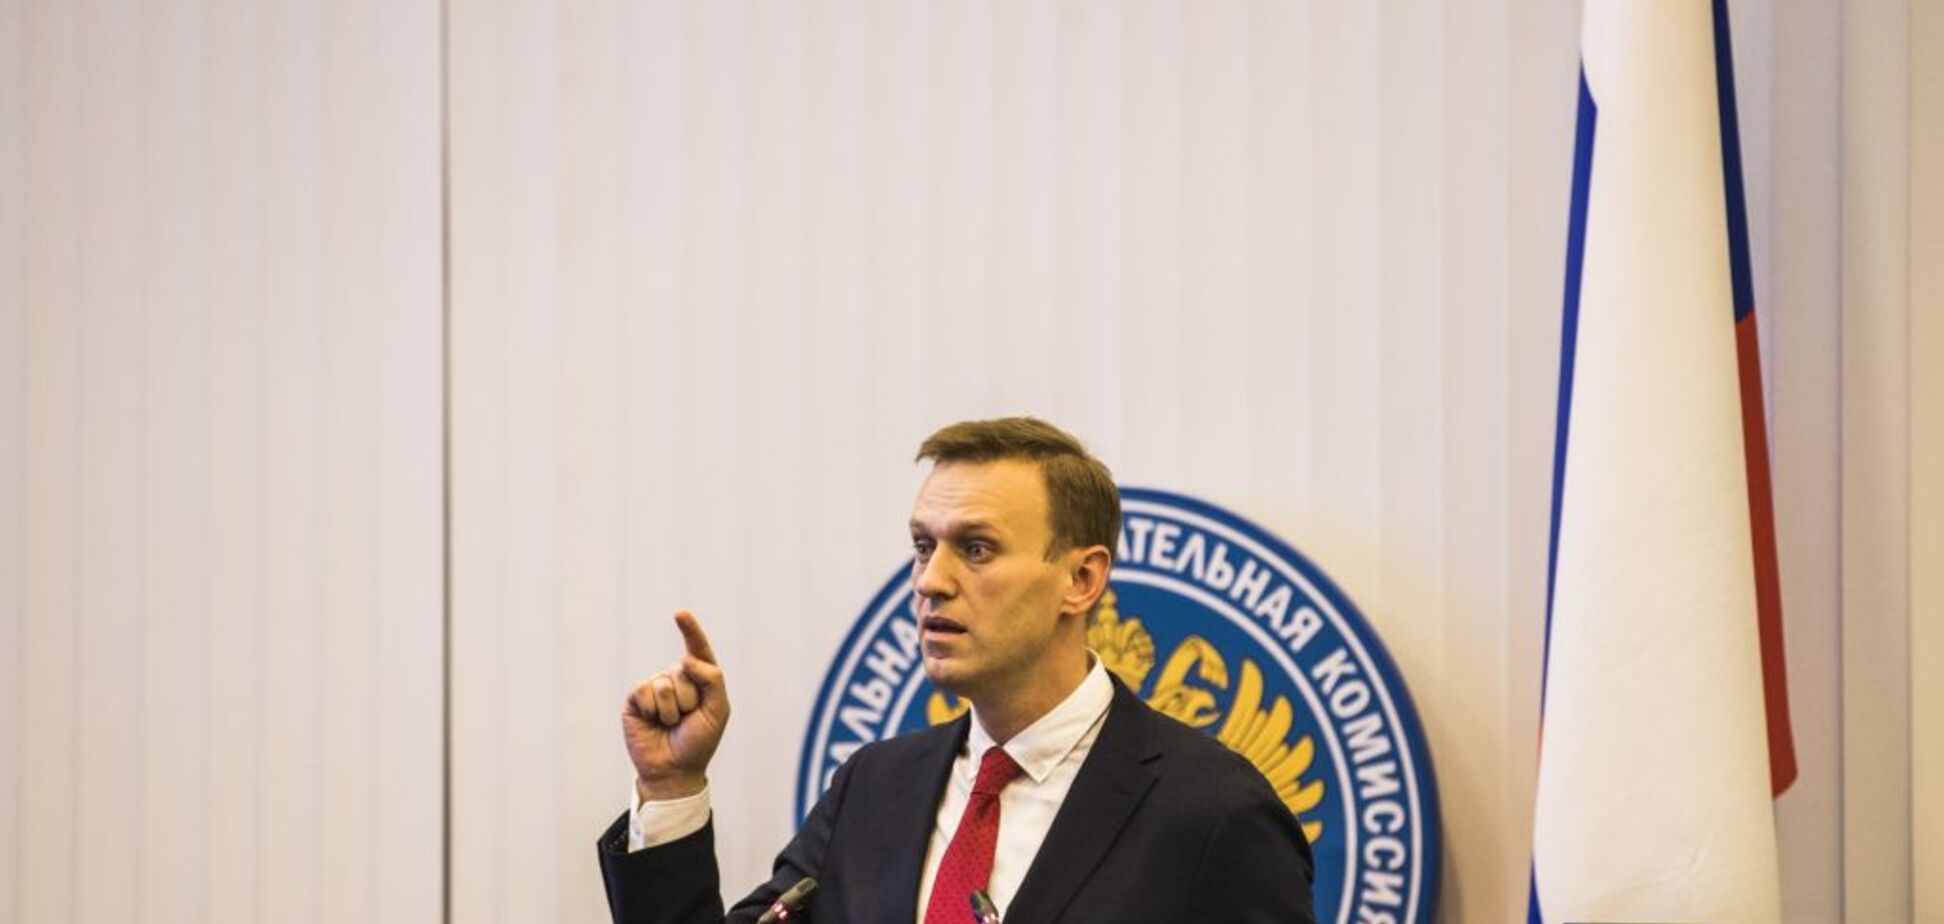 Выборы в России: ЦИК Путина приняла решение по Навальному